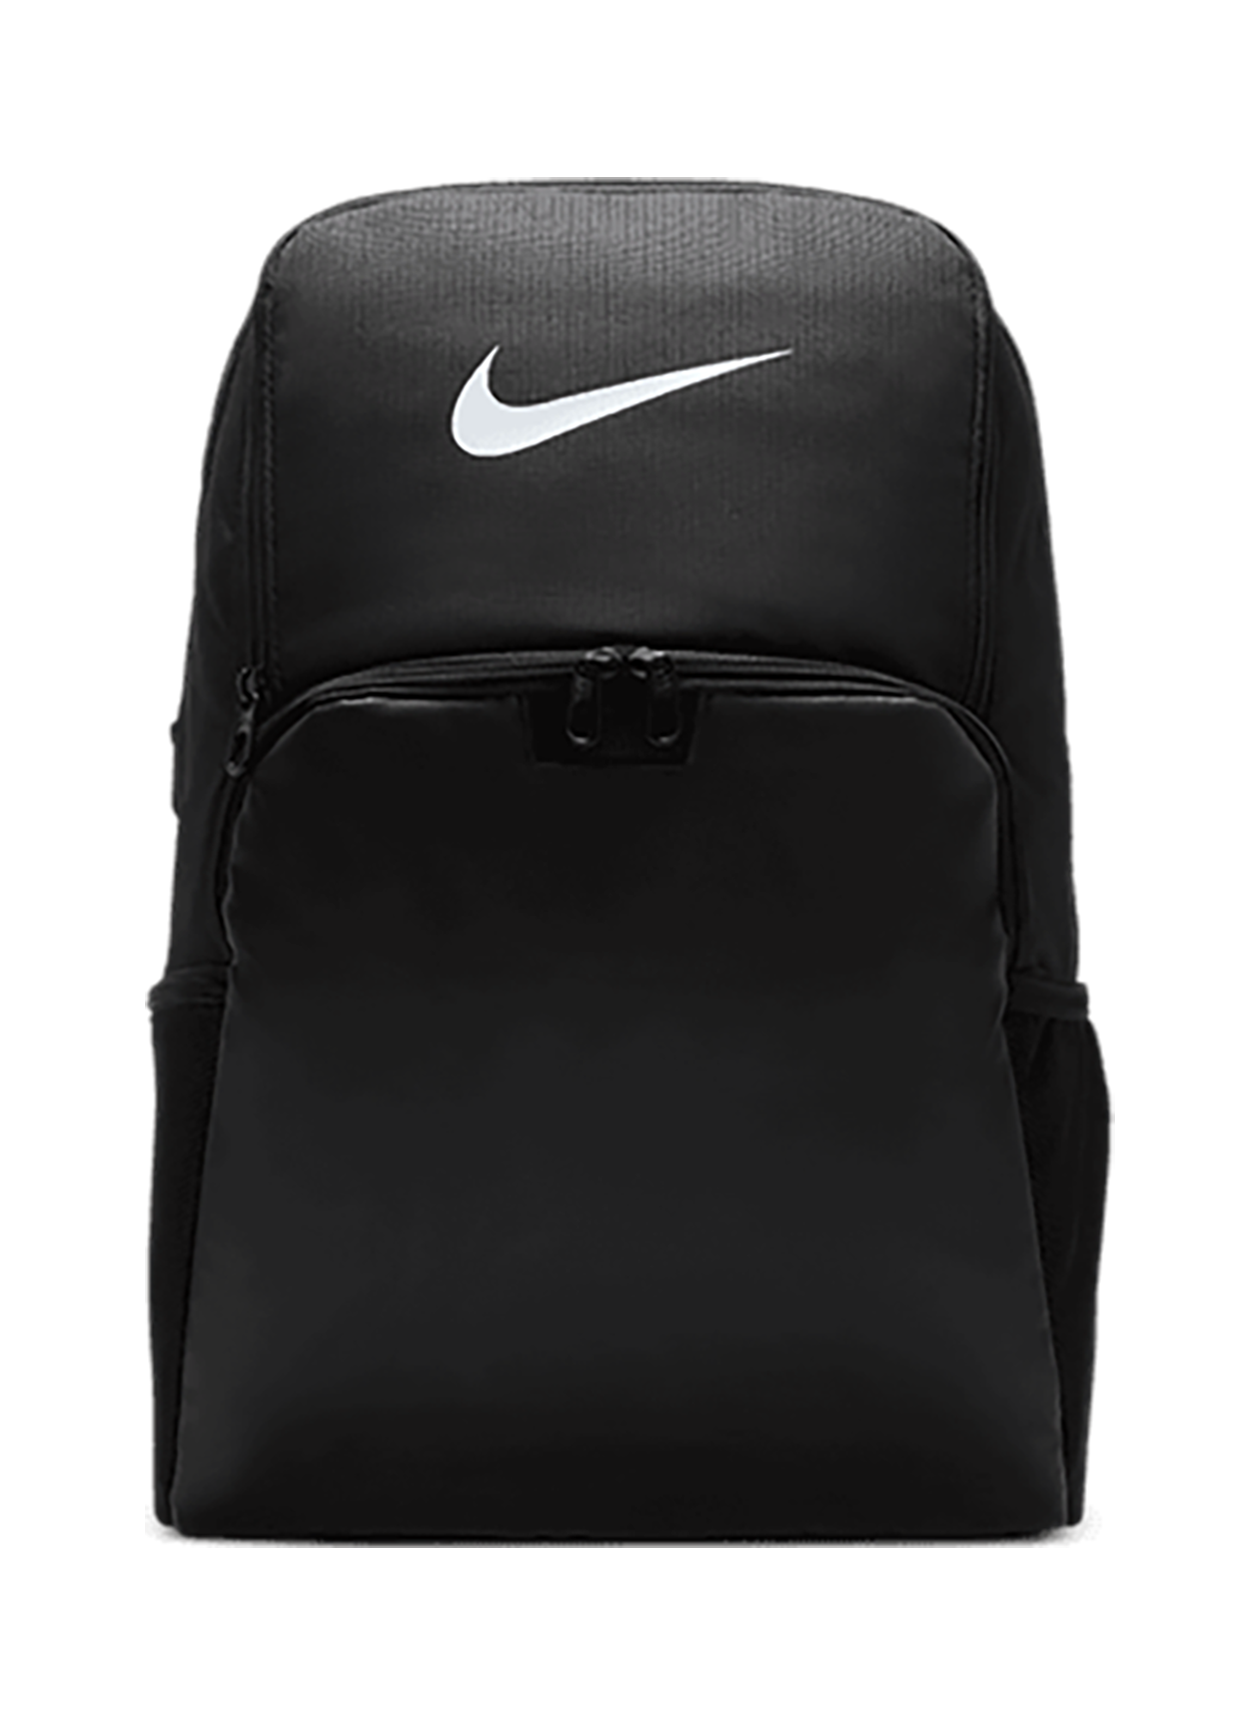 Nike - Brasilia Backpack